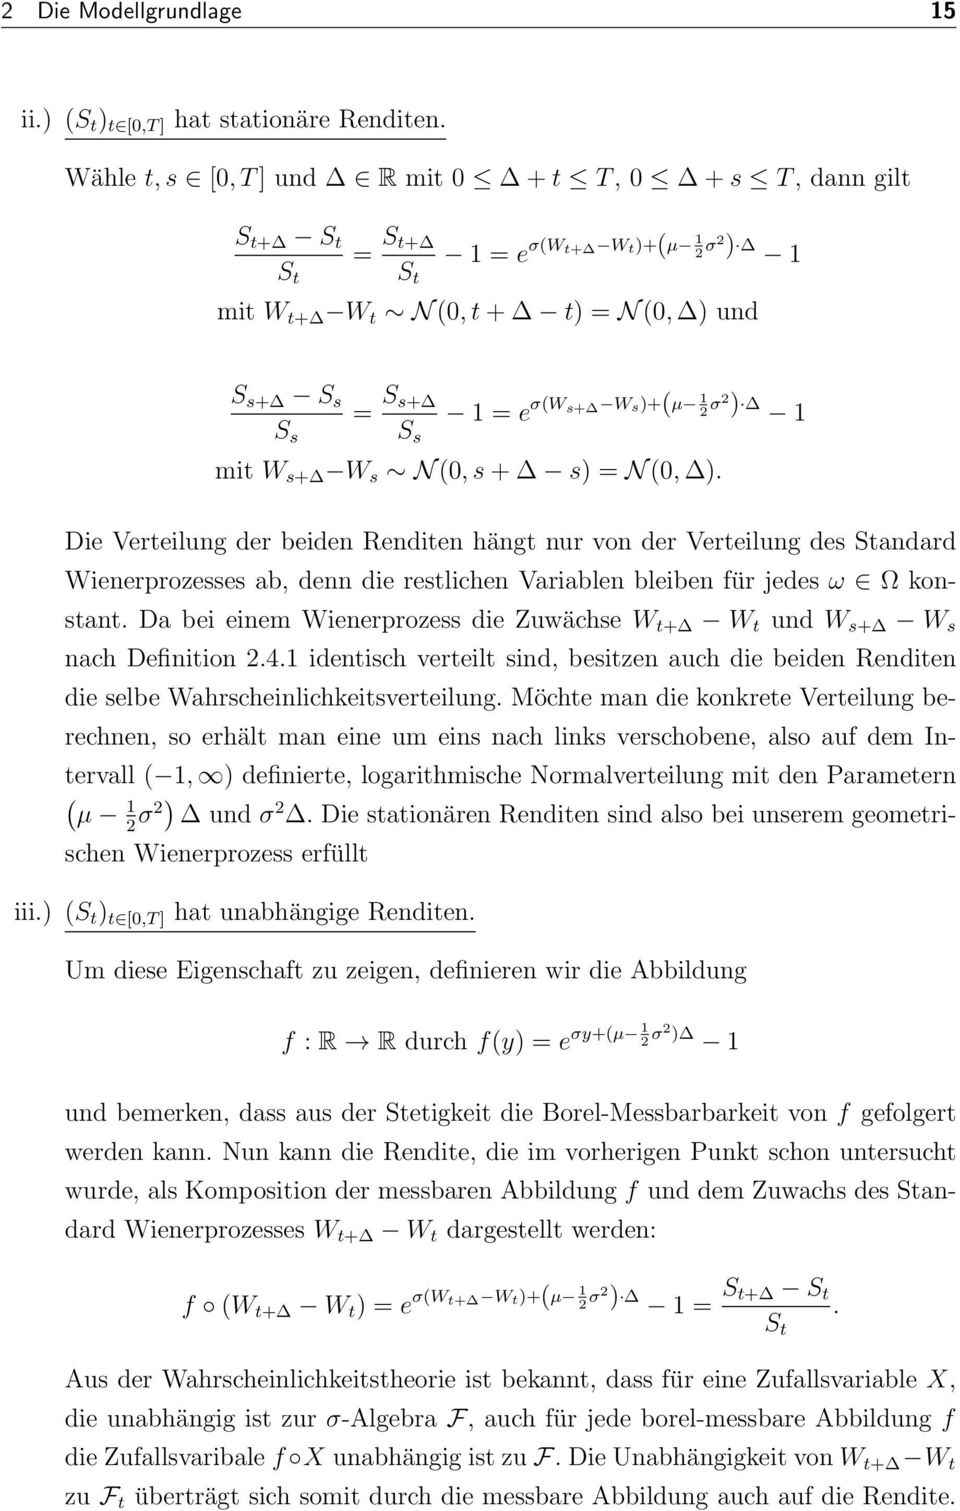 s+ W s N (0, s + s = N (0,. Die Verteilung der beiden Renditen hängt nur von der Verteilung des Standard Wienerprozesses ab, denn die restlichen Variablen bleiben für jedes ω Ω konstant.